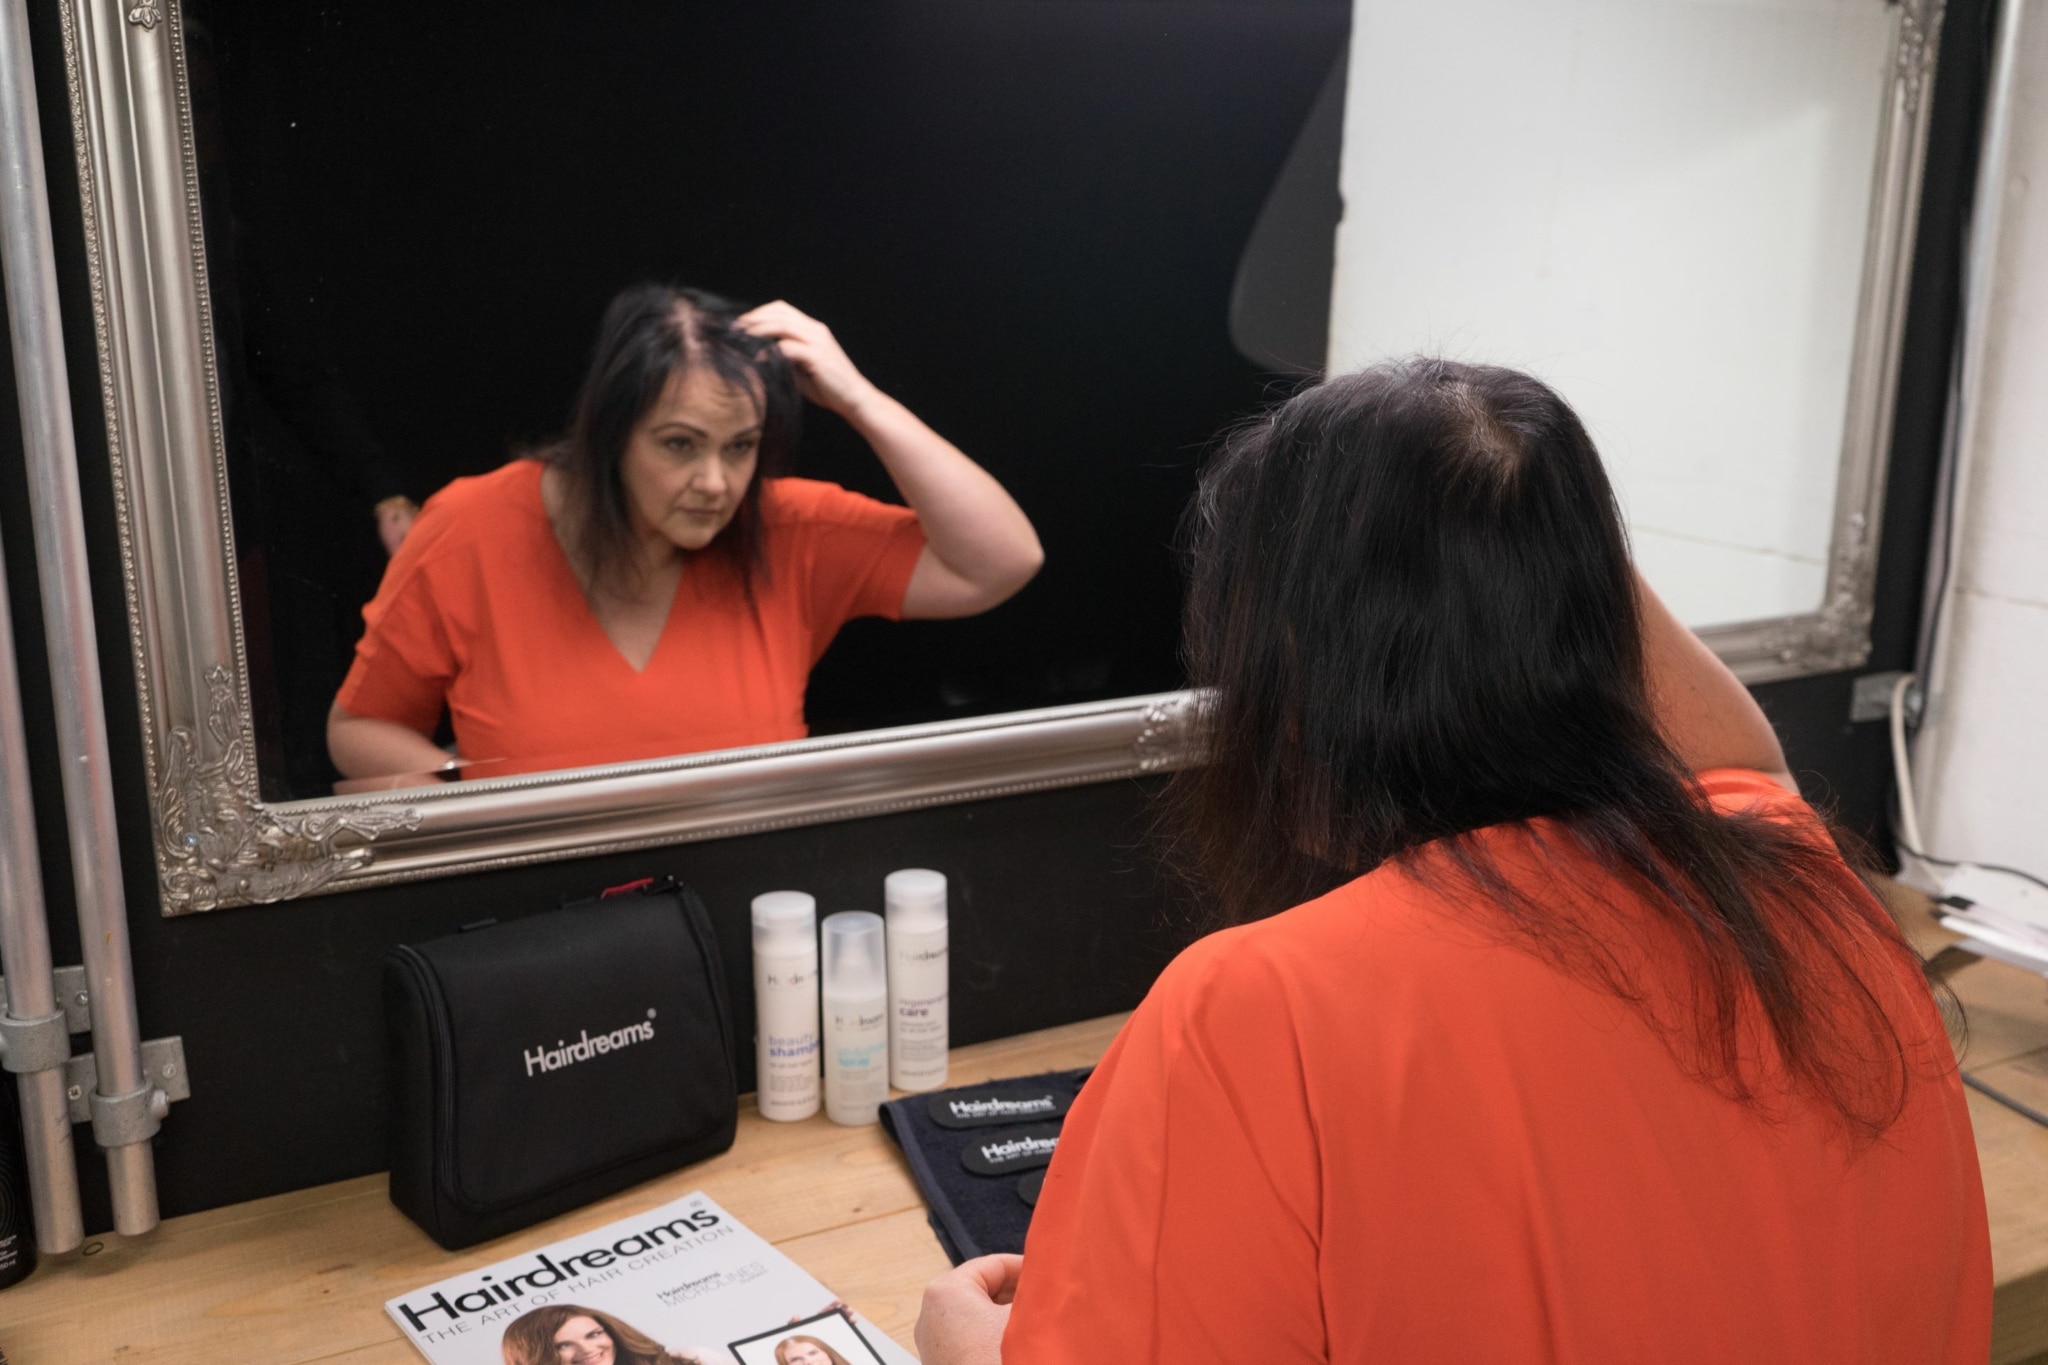 Woman checks her thin hair in the mirror.